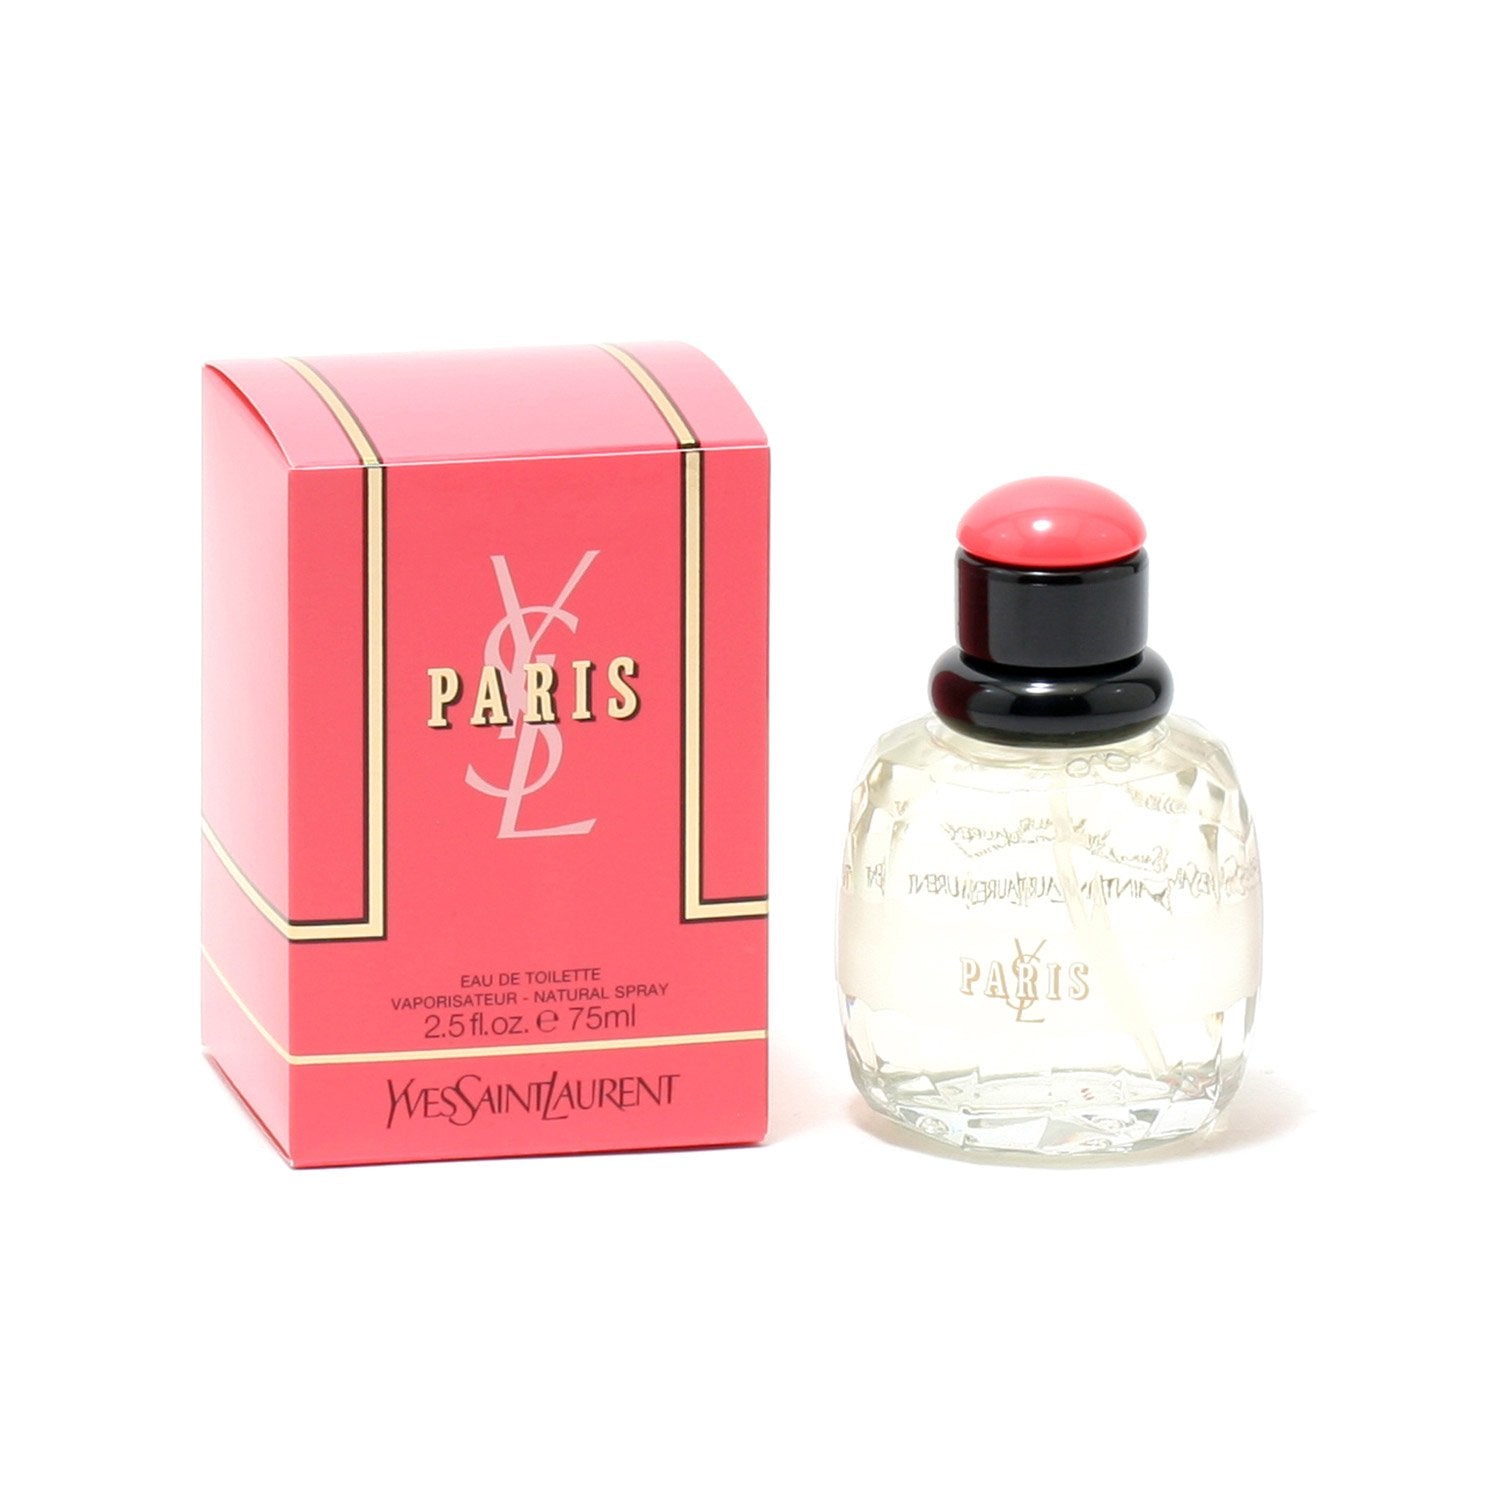 ❤ 全球限量发售❤ Travel set spray ※ - Paris Perfume House